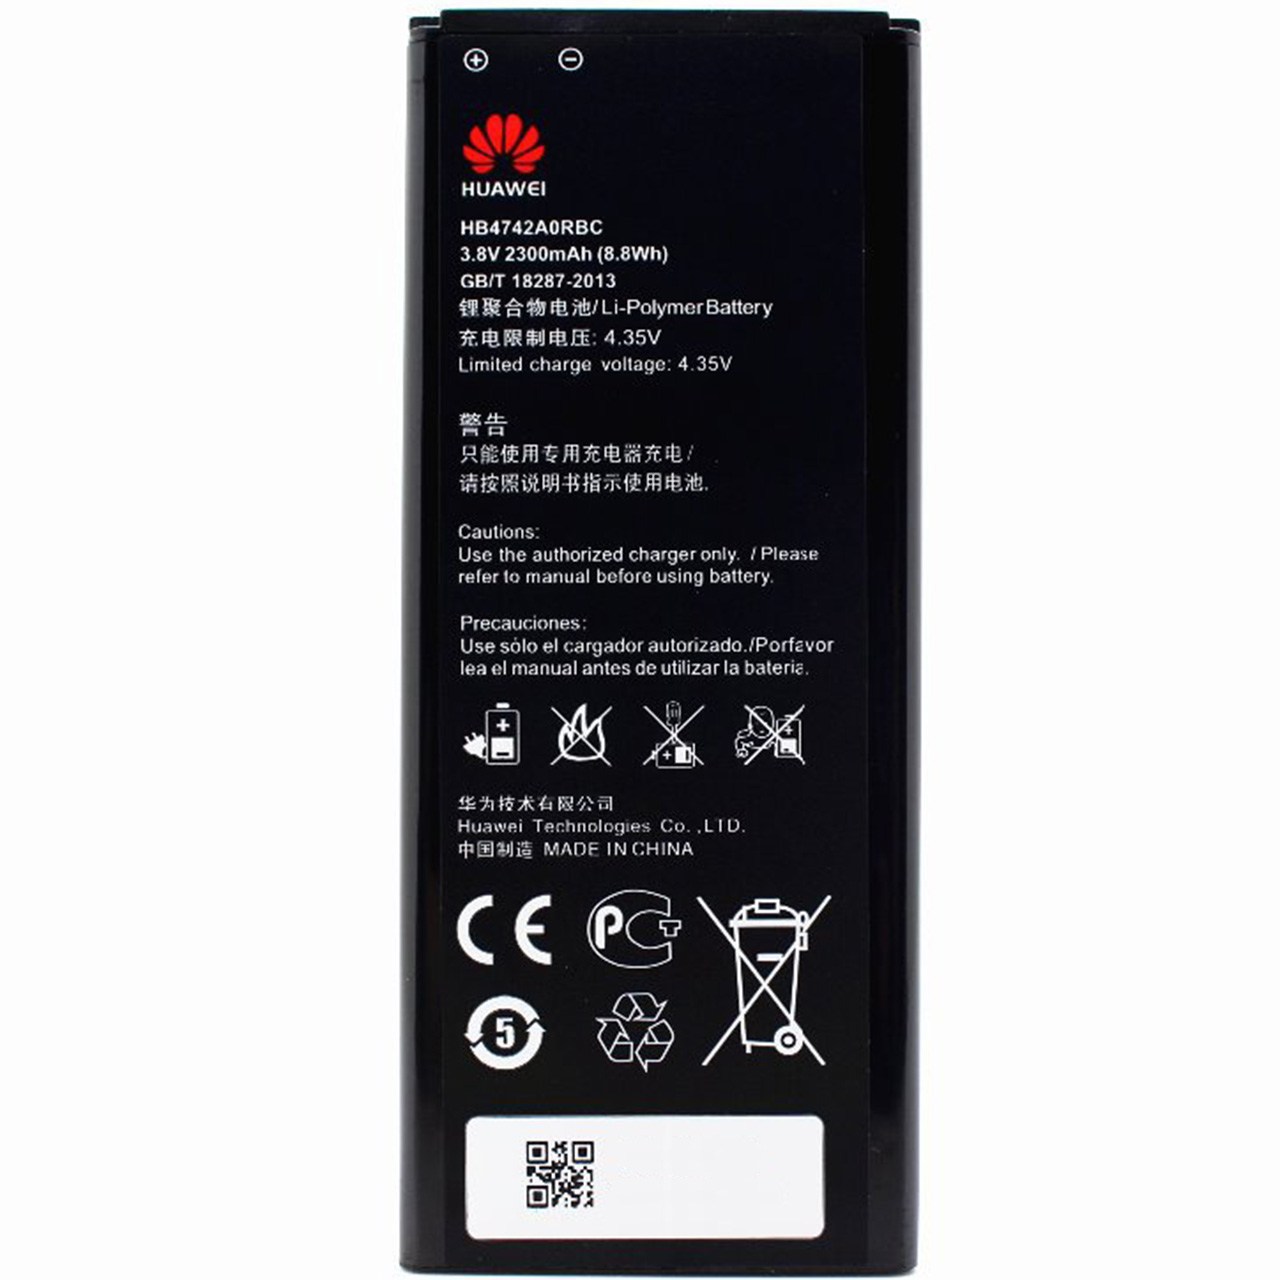 باتری موبایل مدل HB4742A0RBC با ظرفیت 2300mAh مناسب برای گوشی موبایل هوآوی Honor 3C/G7730